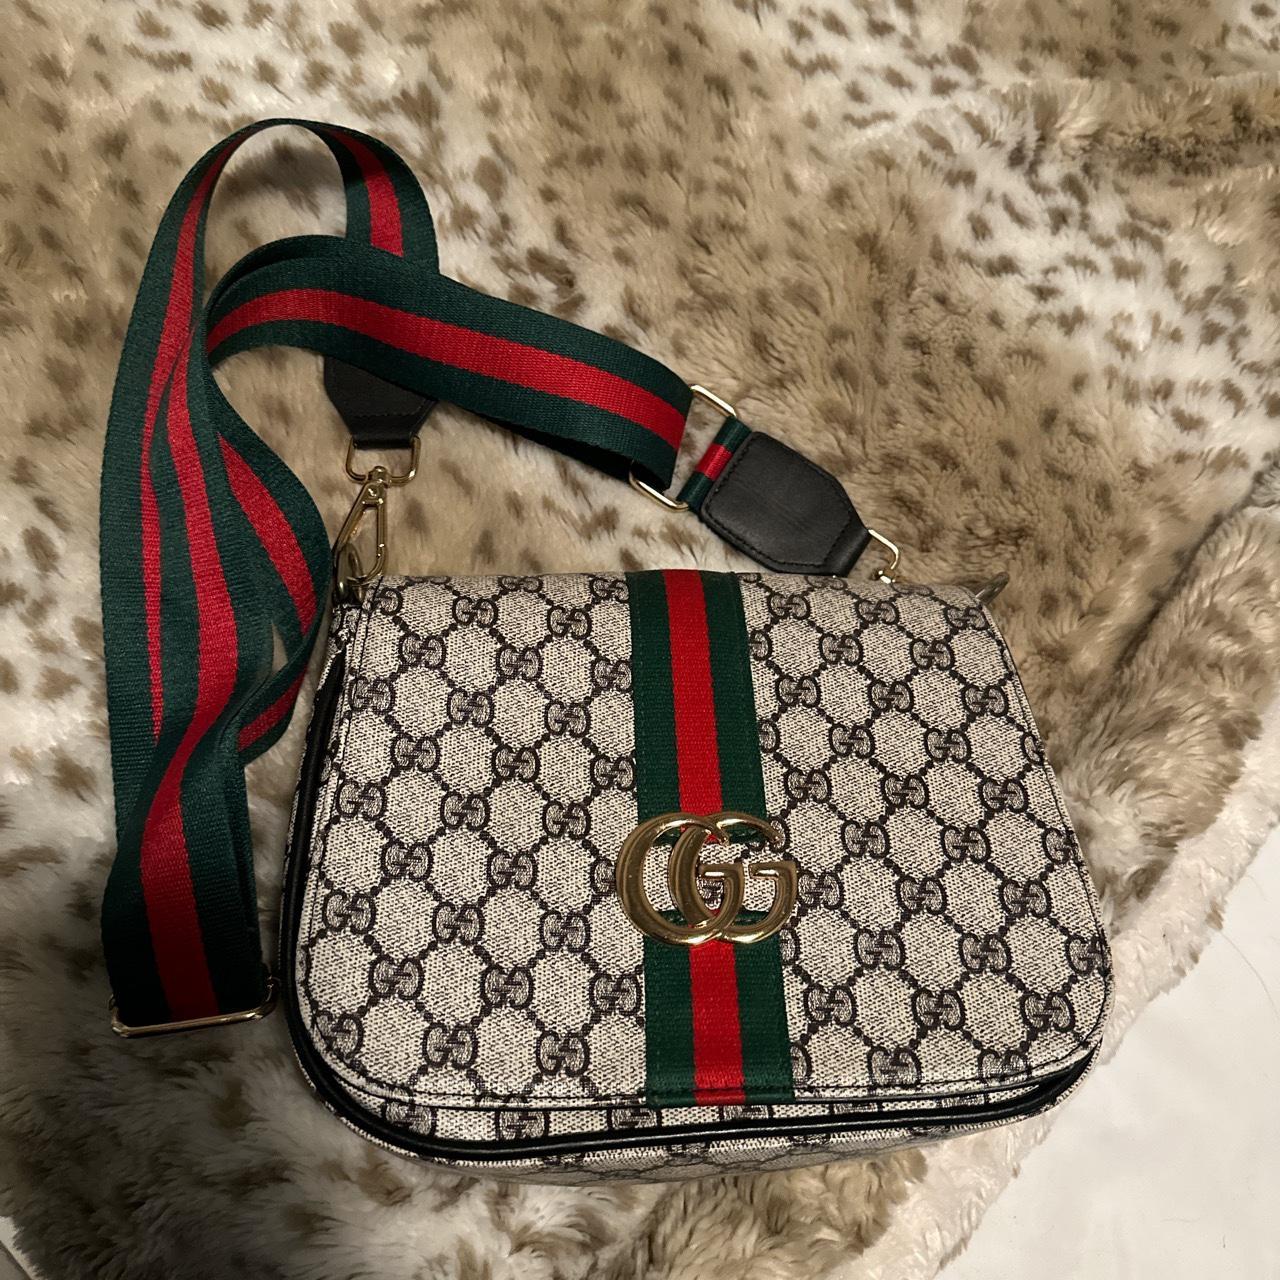 Classic Gucci Marmont mini meteleassé shoulder bag - Depop